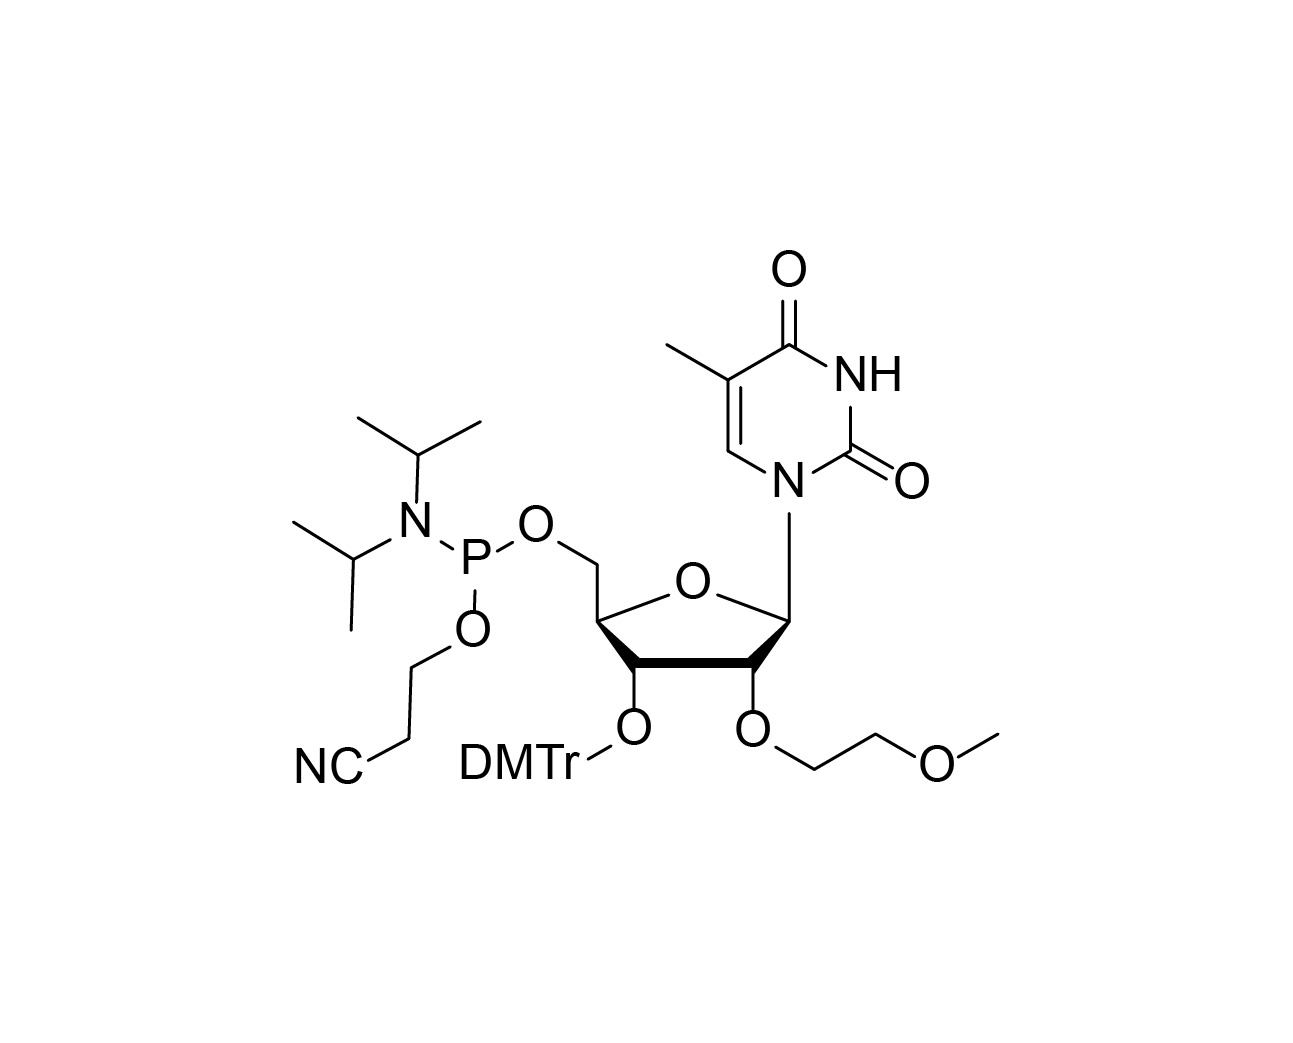 3'-O-DMTr-2'-O-MOE-rT-5'-CE-Phosphoramidite